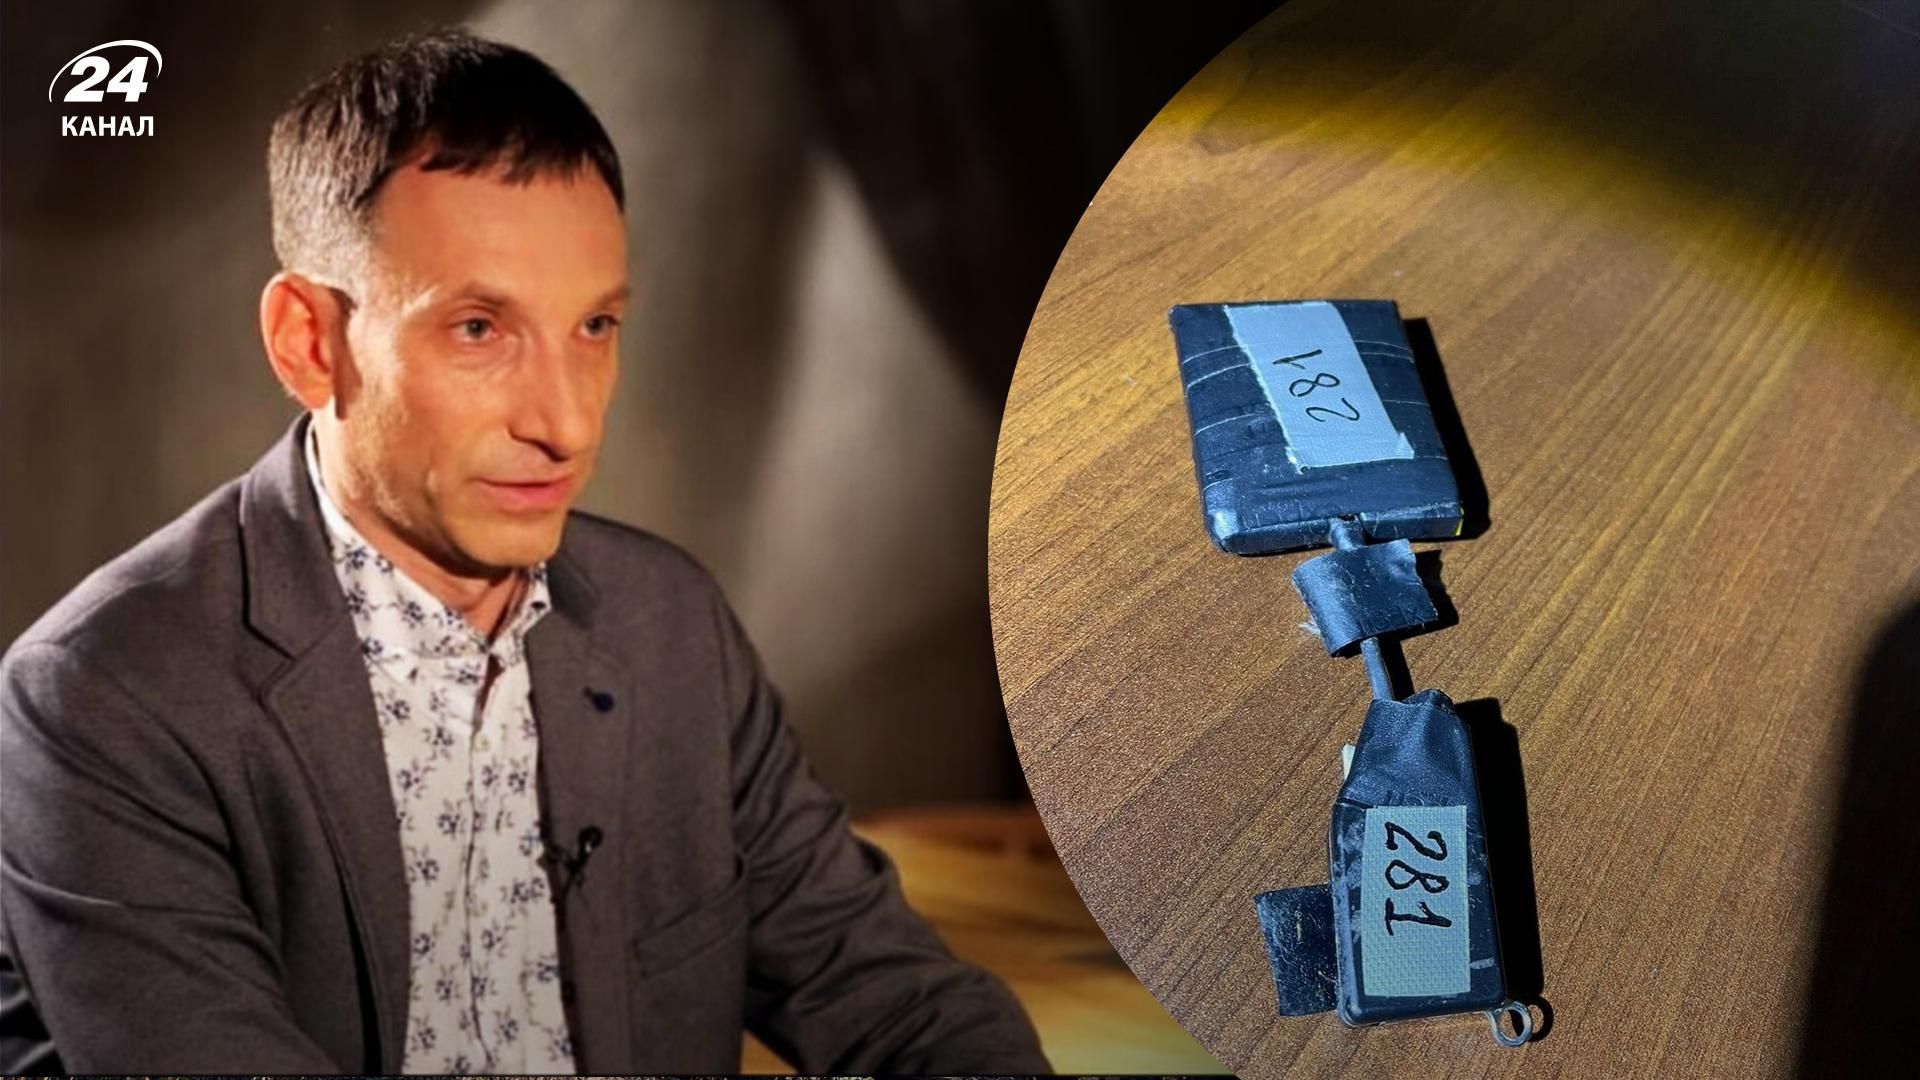 Віталій Портников знайшов у своїй львівській квартирі підслуховуючий пристрій